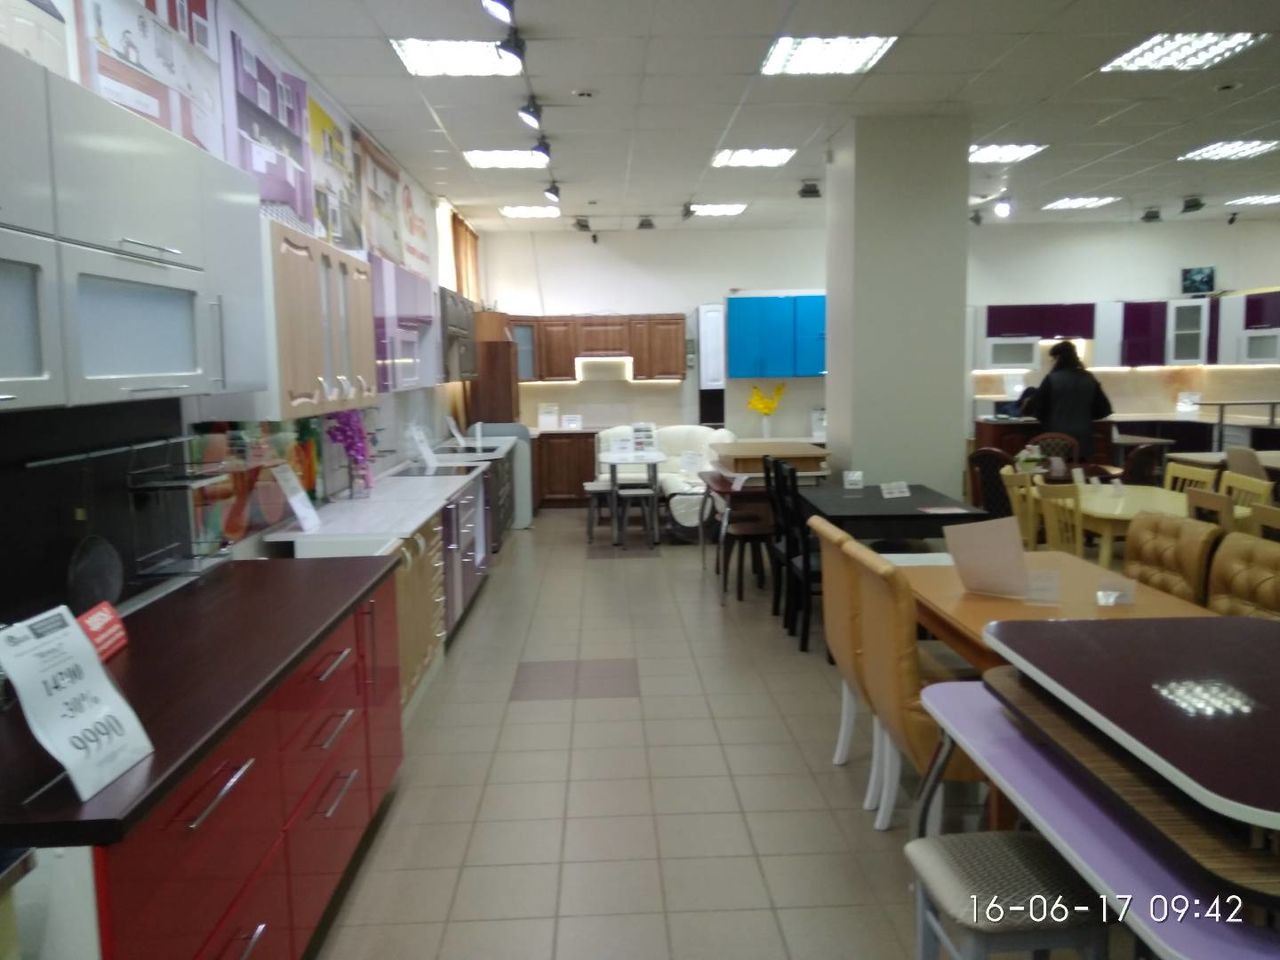 Огромный ассортимент кухонной мебели как на заказ так и в наличии на складе в г. Кирове.